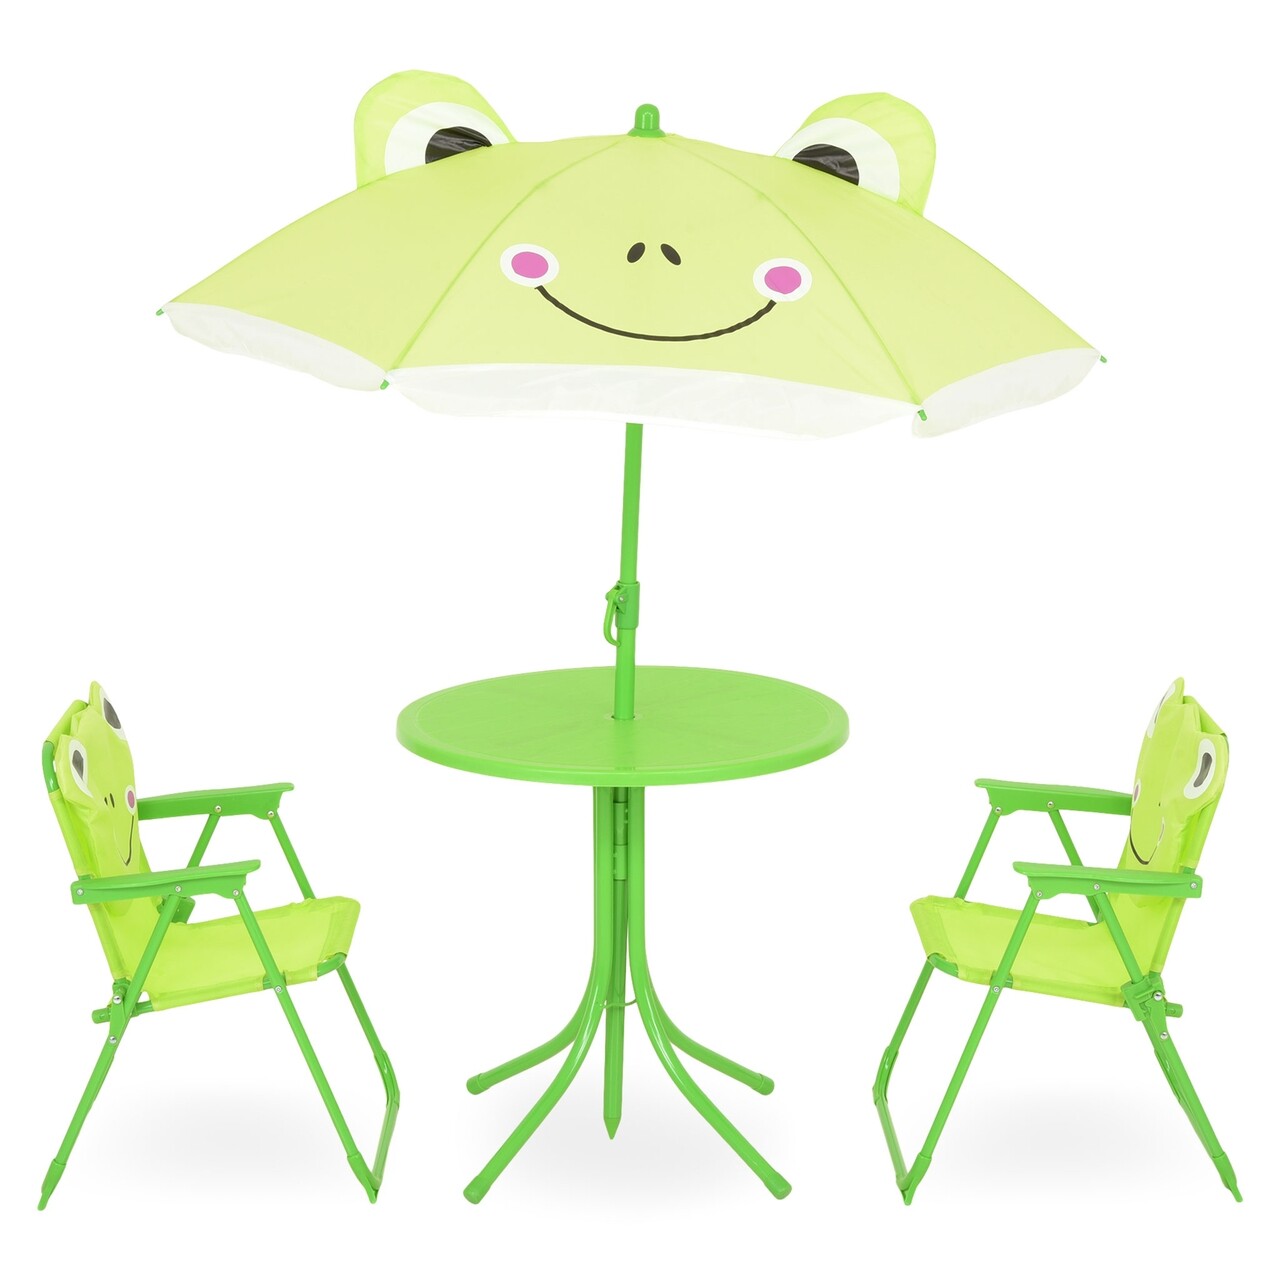 Frog Kerti gyerekbútor szett, 4 darabos, zöld